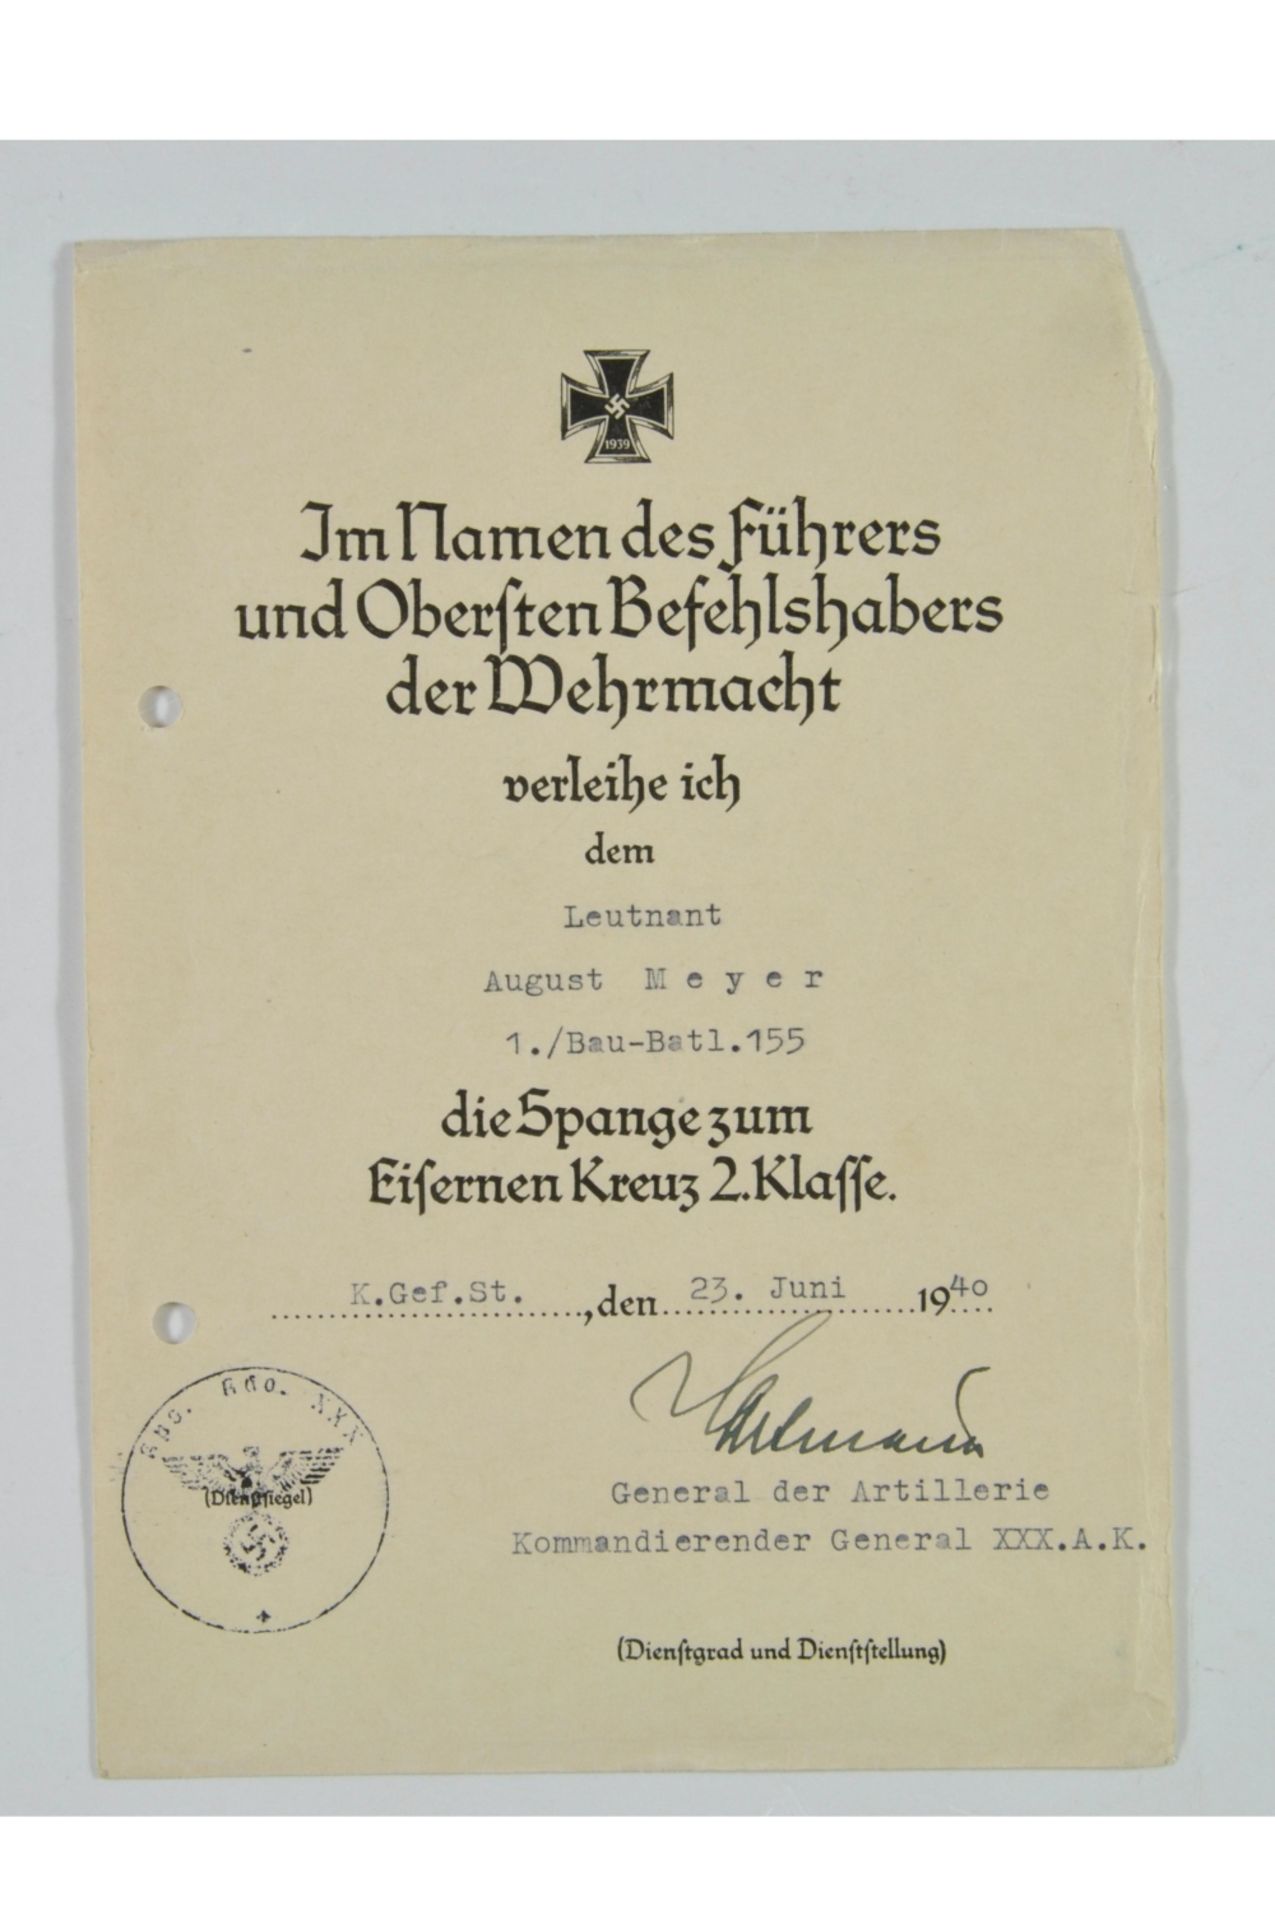 Verleihungsurkunde eines Leutnants des 1./Bau-Batl. 155 für die Spange zum Eisernen Kreuz 2. Klasse,